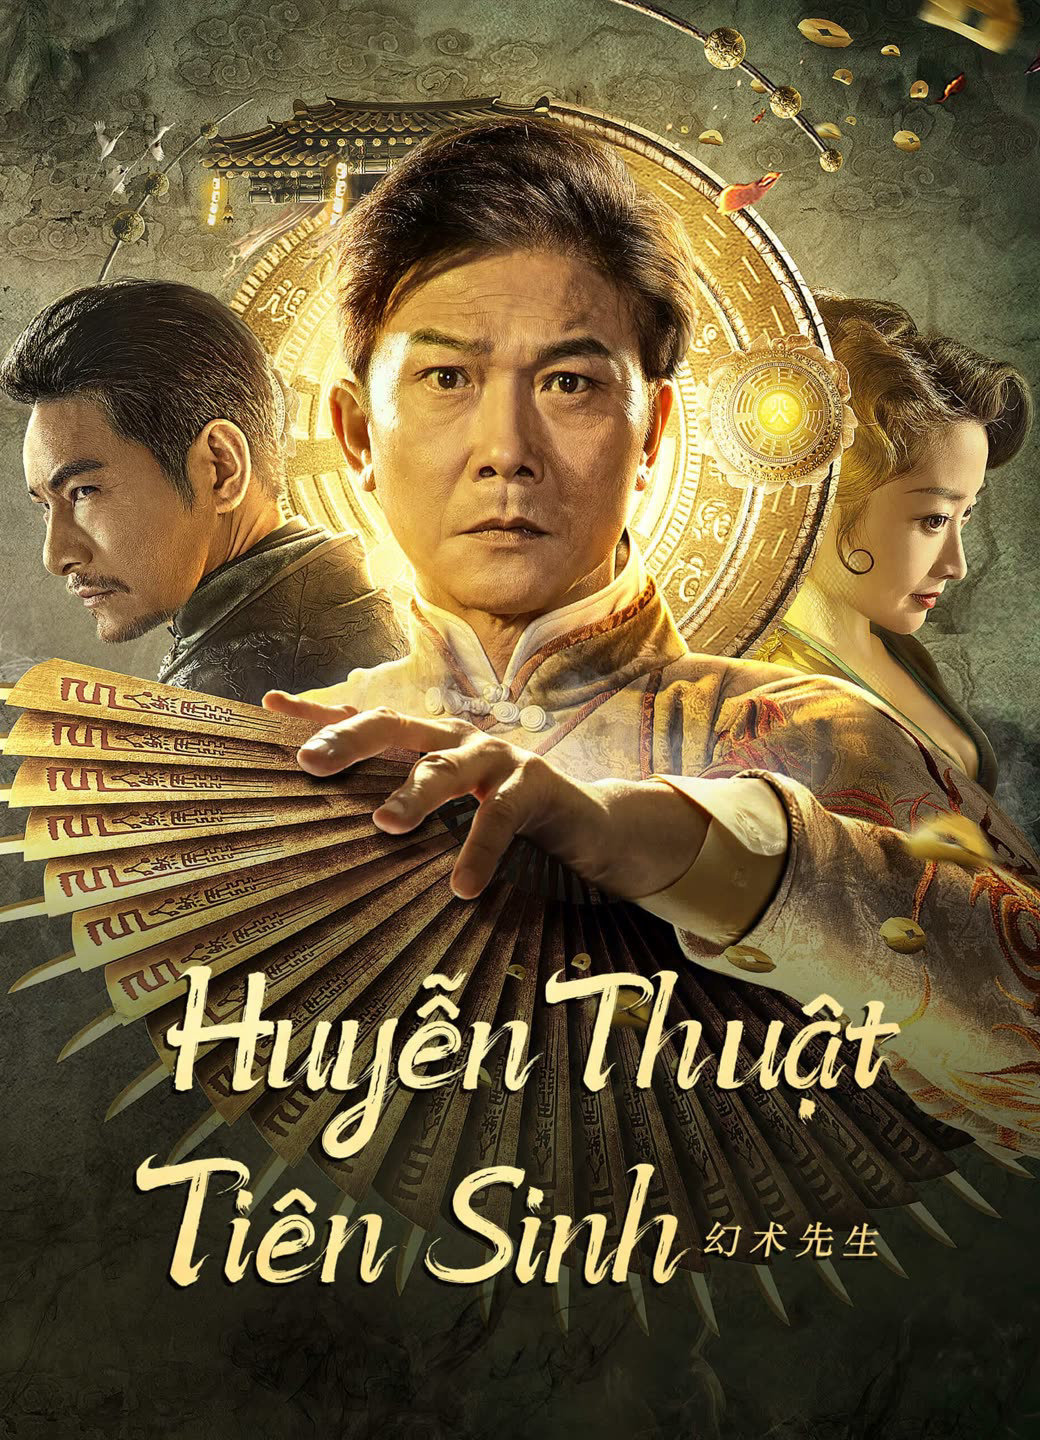 Huyễn Thuật Tiên Sinh - The great magician